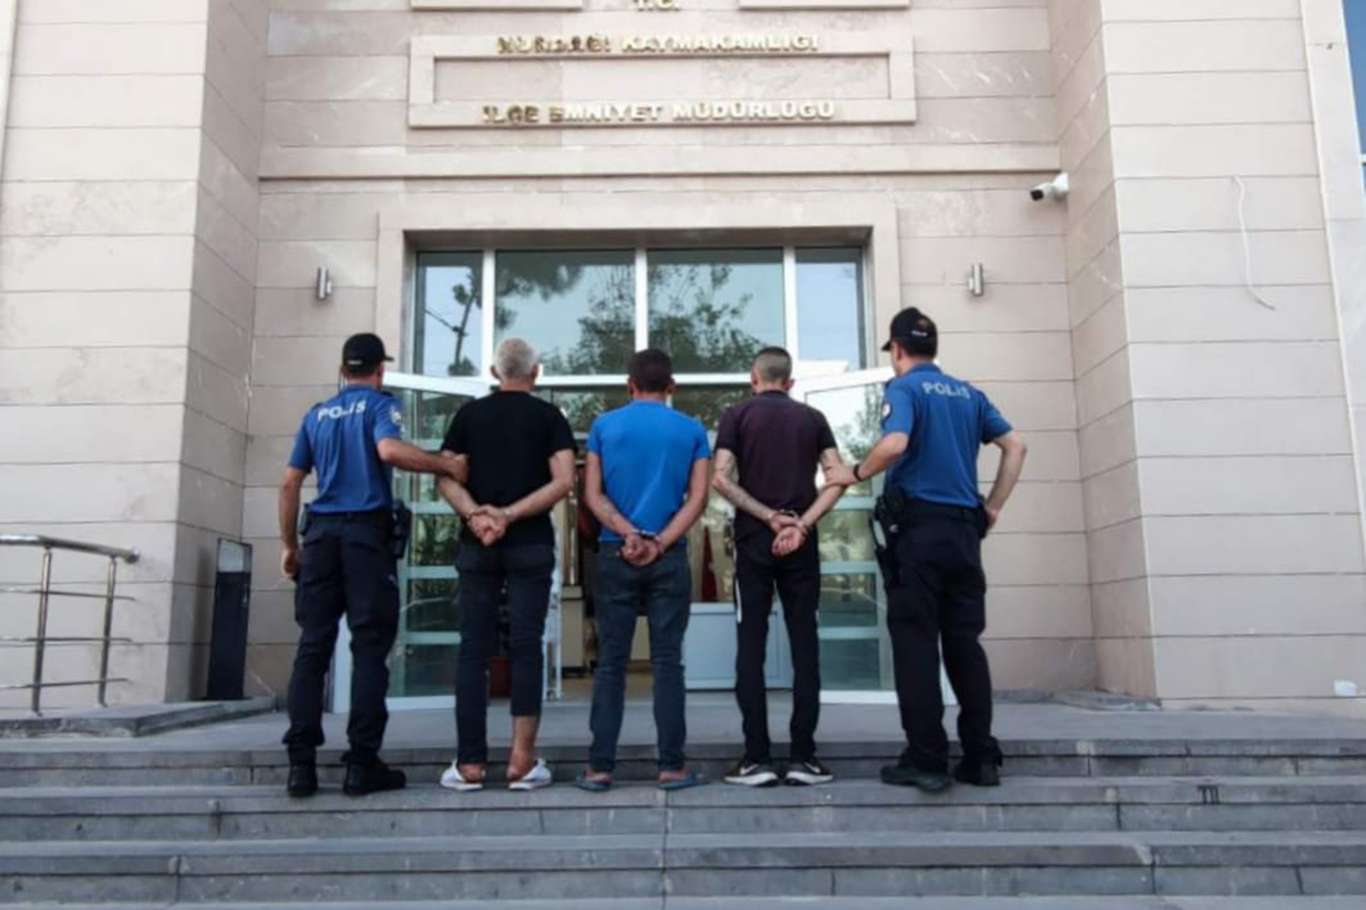 Gaziantep’te uyuşturucudan suç kaydı bulunan 3 kişi tutuklandı